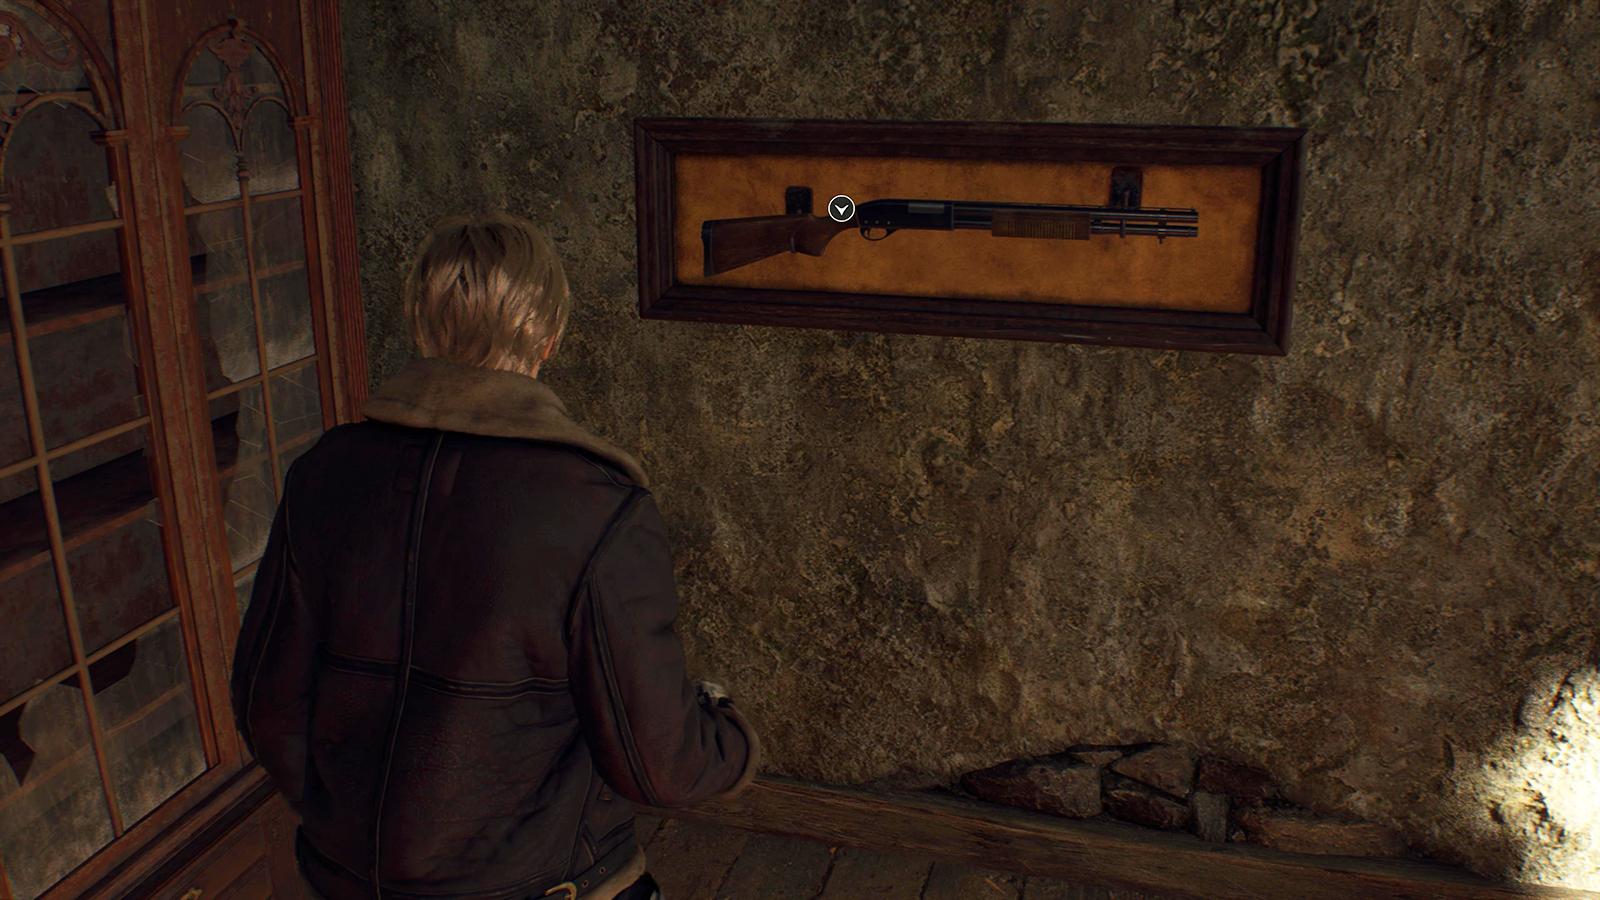 The Shotgun in Resident Evil 4 remake